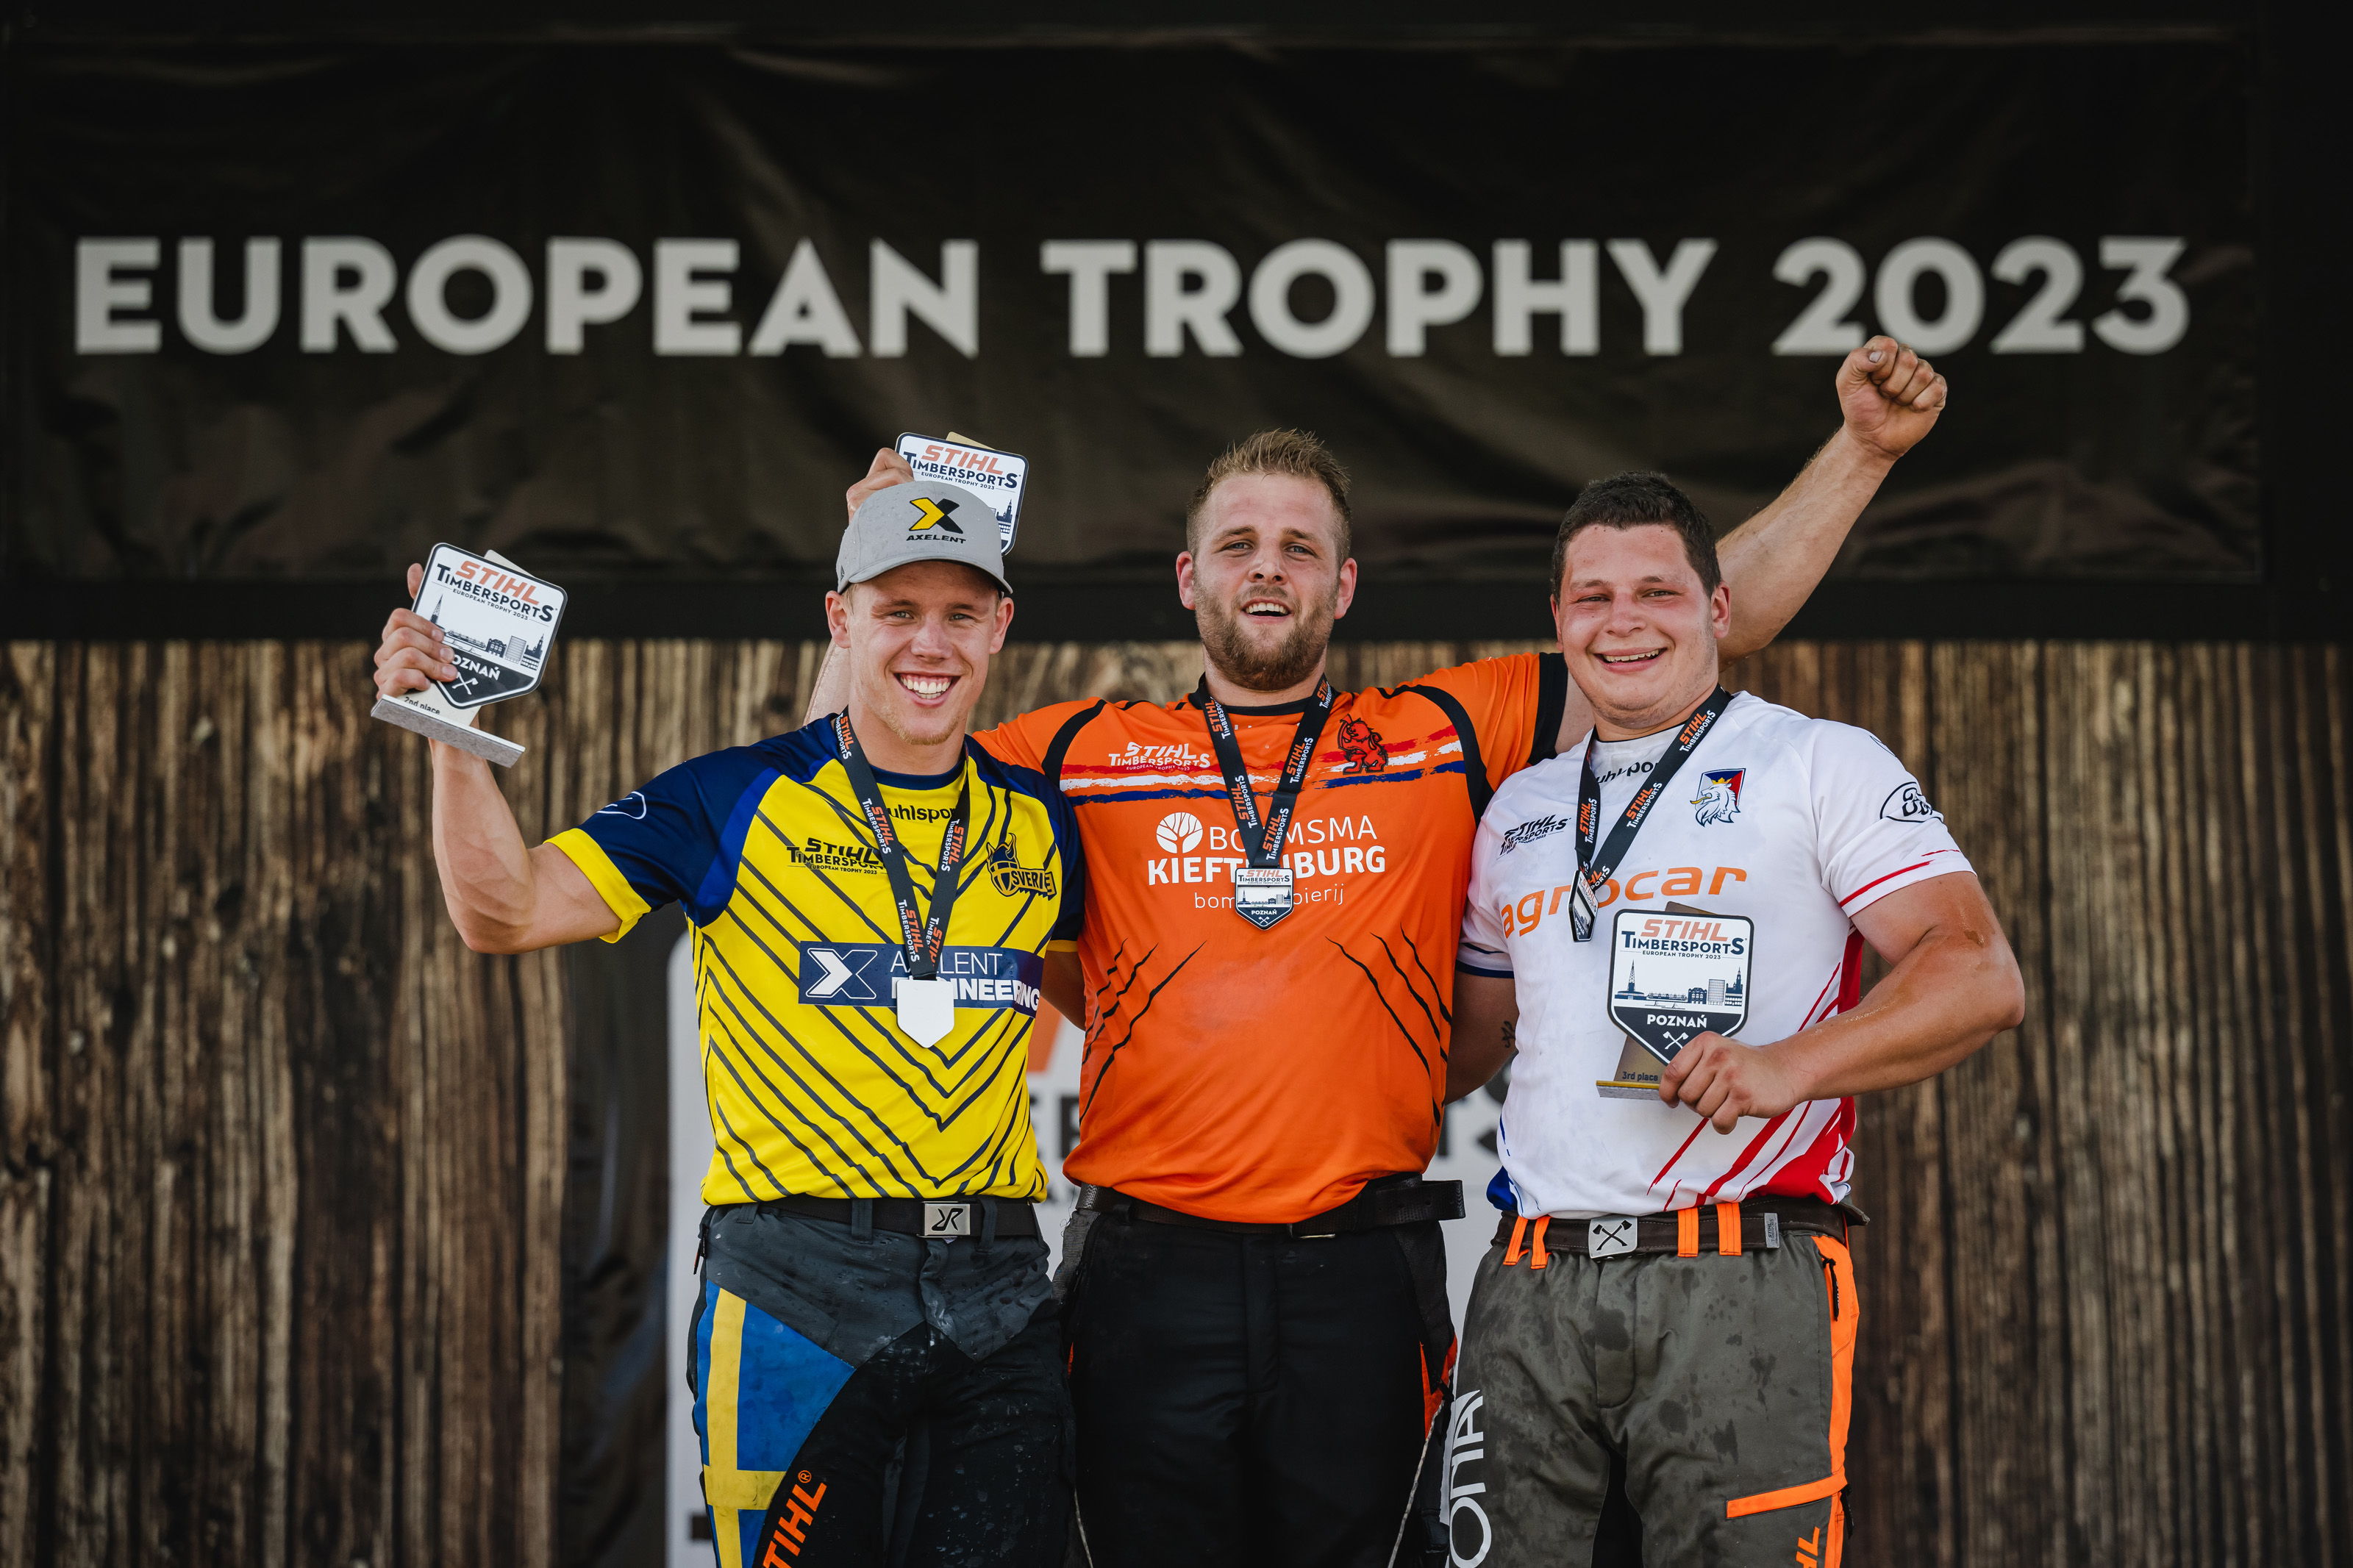 De top drie in de 2023 European Trophy: Redmer Knol uit Nederland (midden), Ferry Svan uit Zweden (links) en Matyáš Klíma uit Tsjechië (rechts).